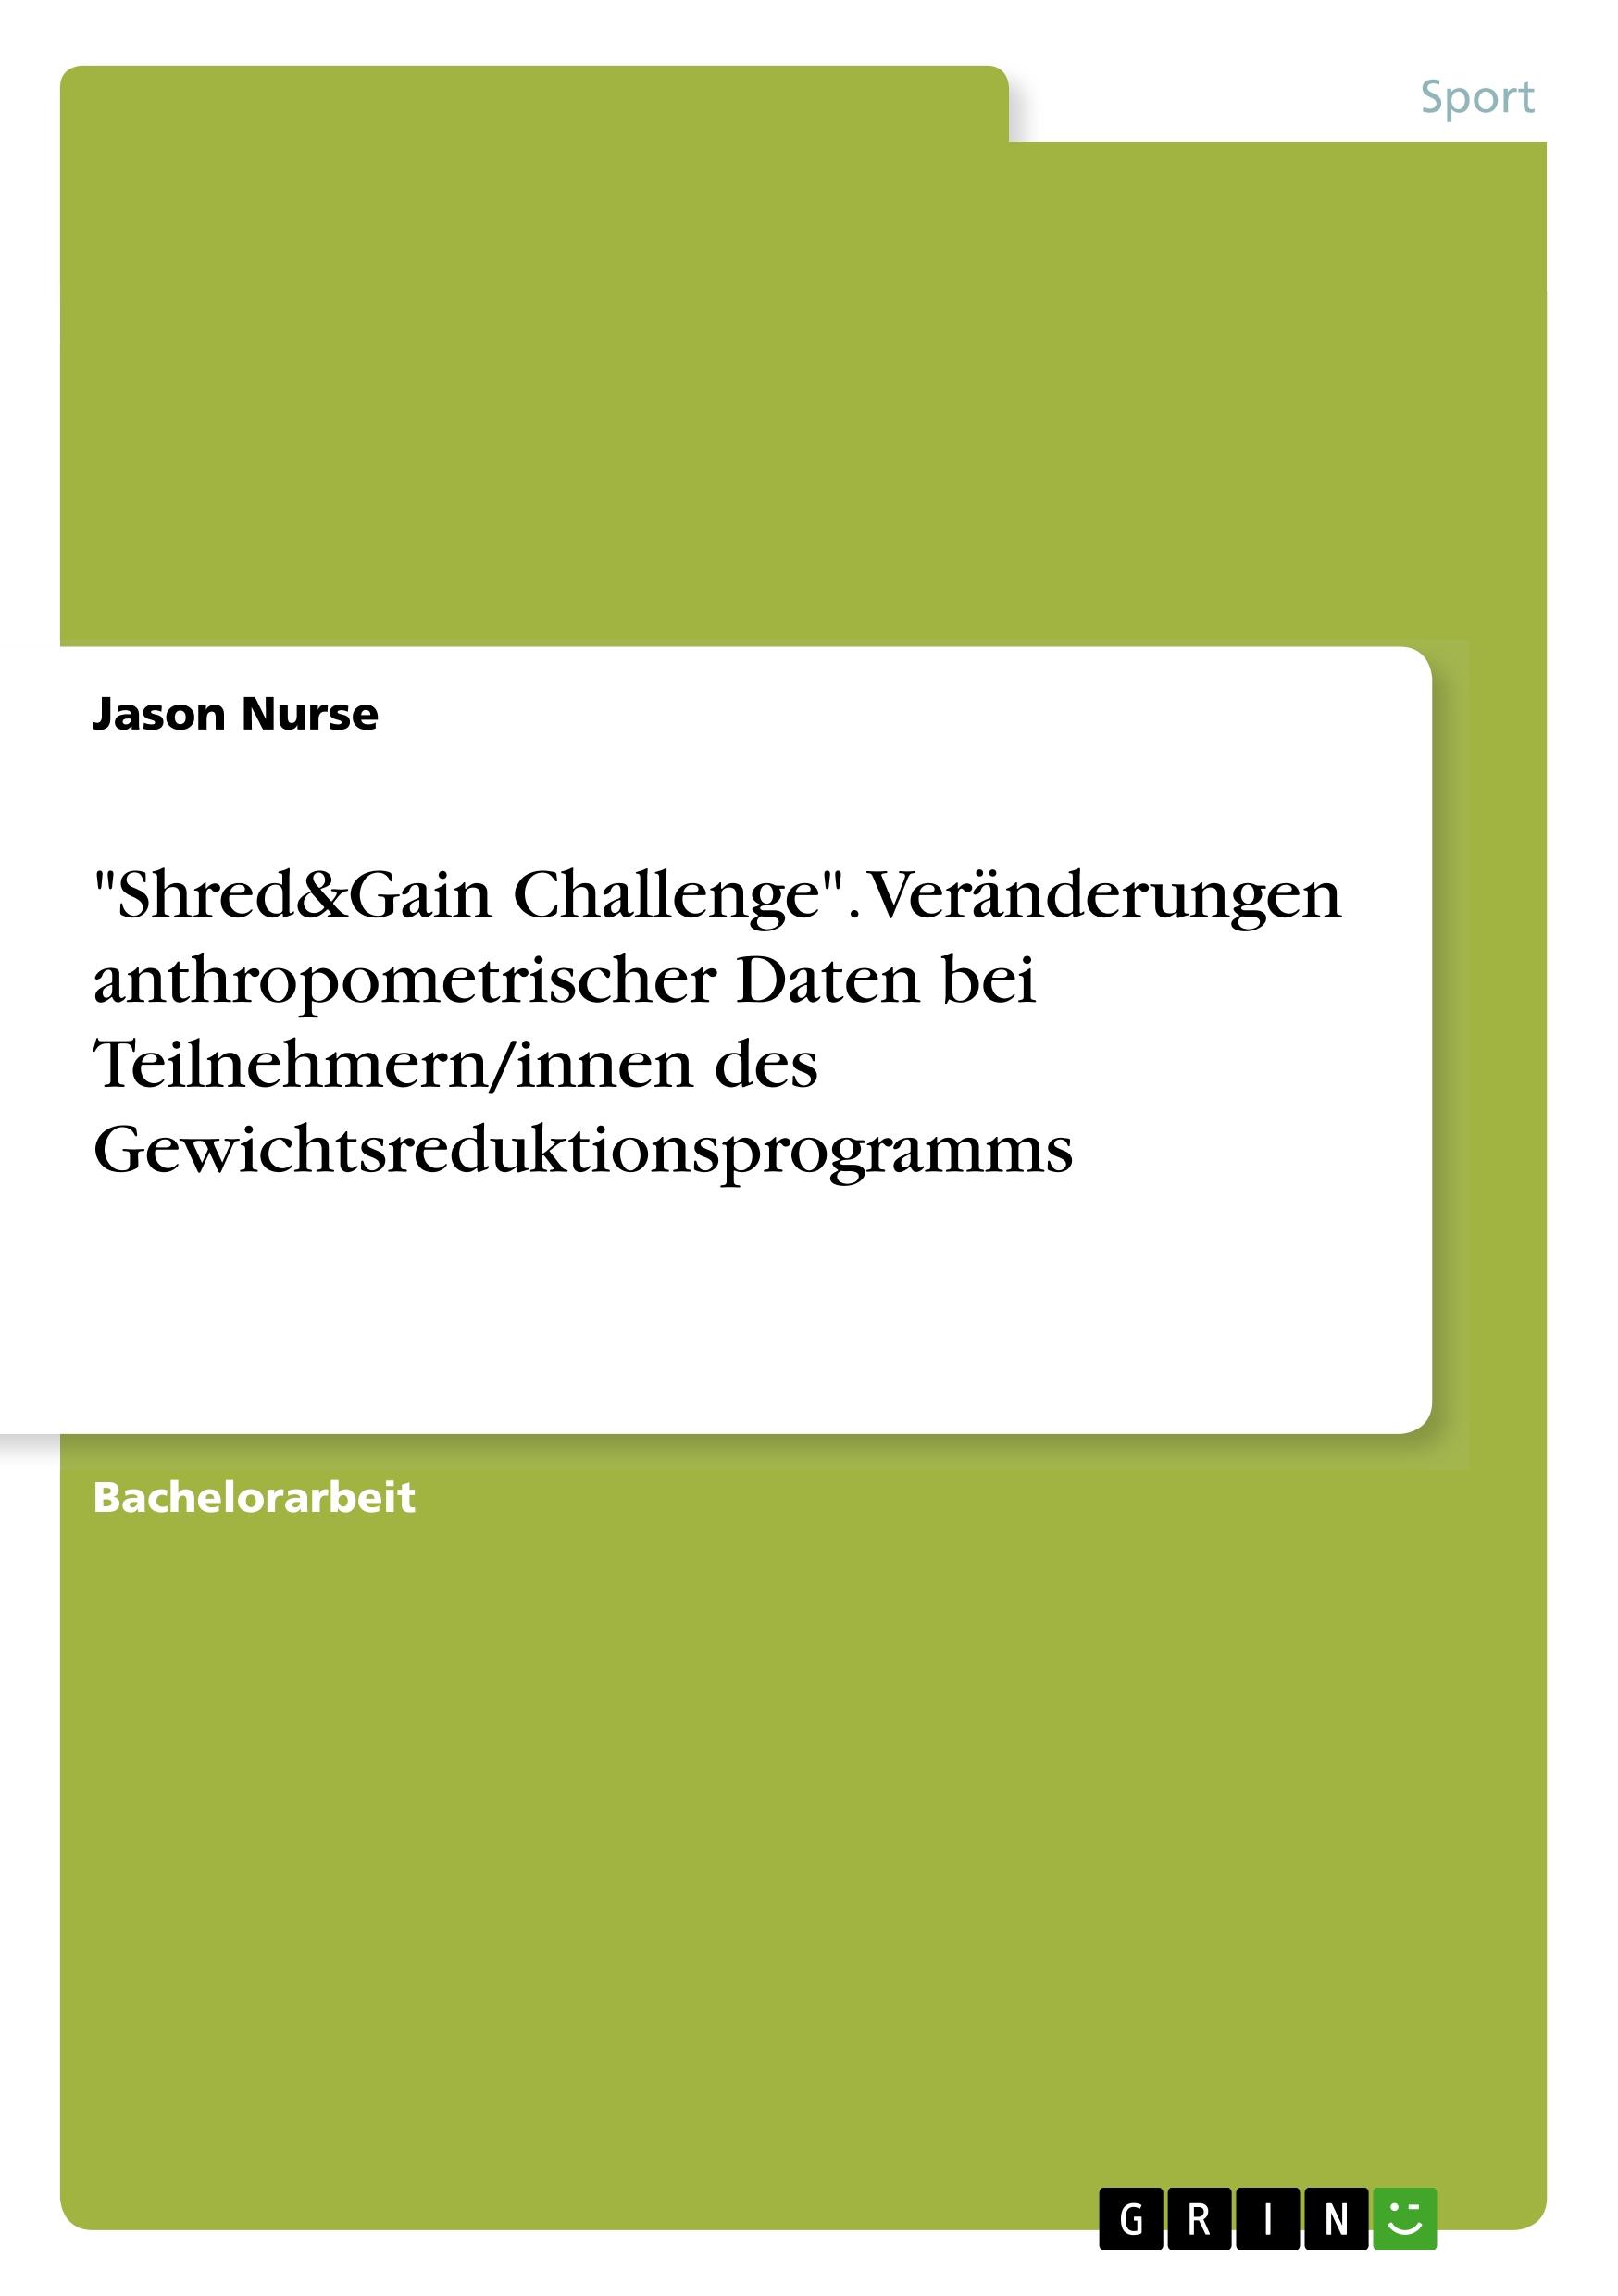 Shred&Gain Challenge . Veraenderungen anthropometrischer Daten bei Teilnehmern/innen des Gewichtsreduktionsprogramms - Nurse, Jason